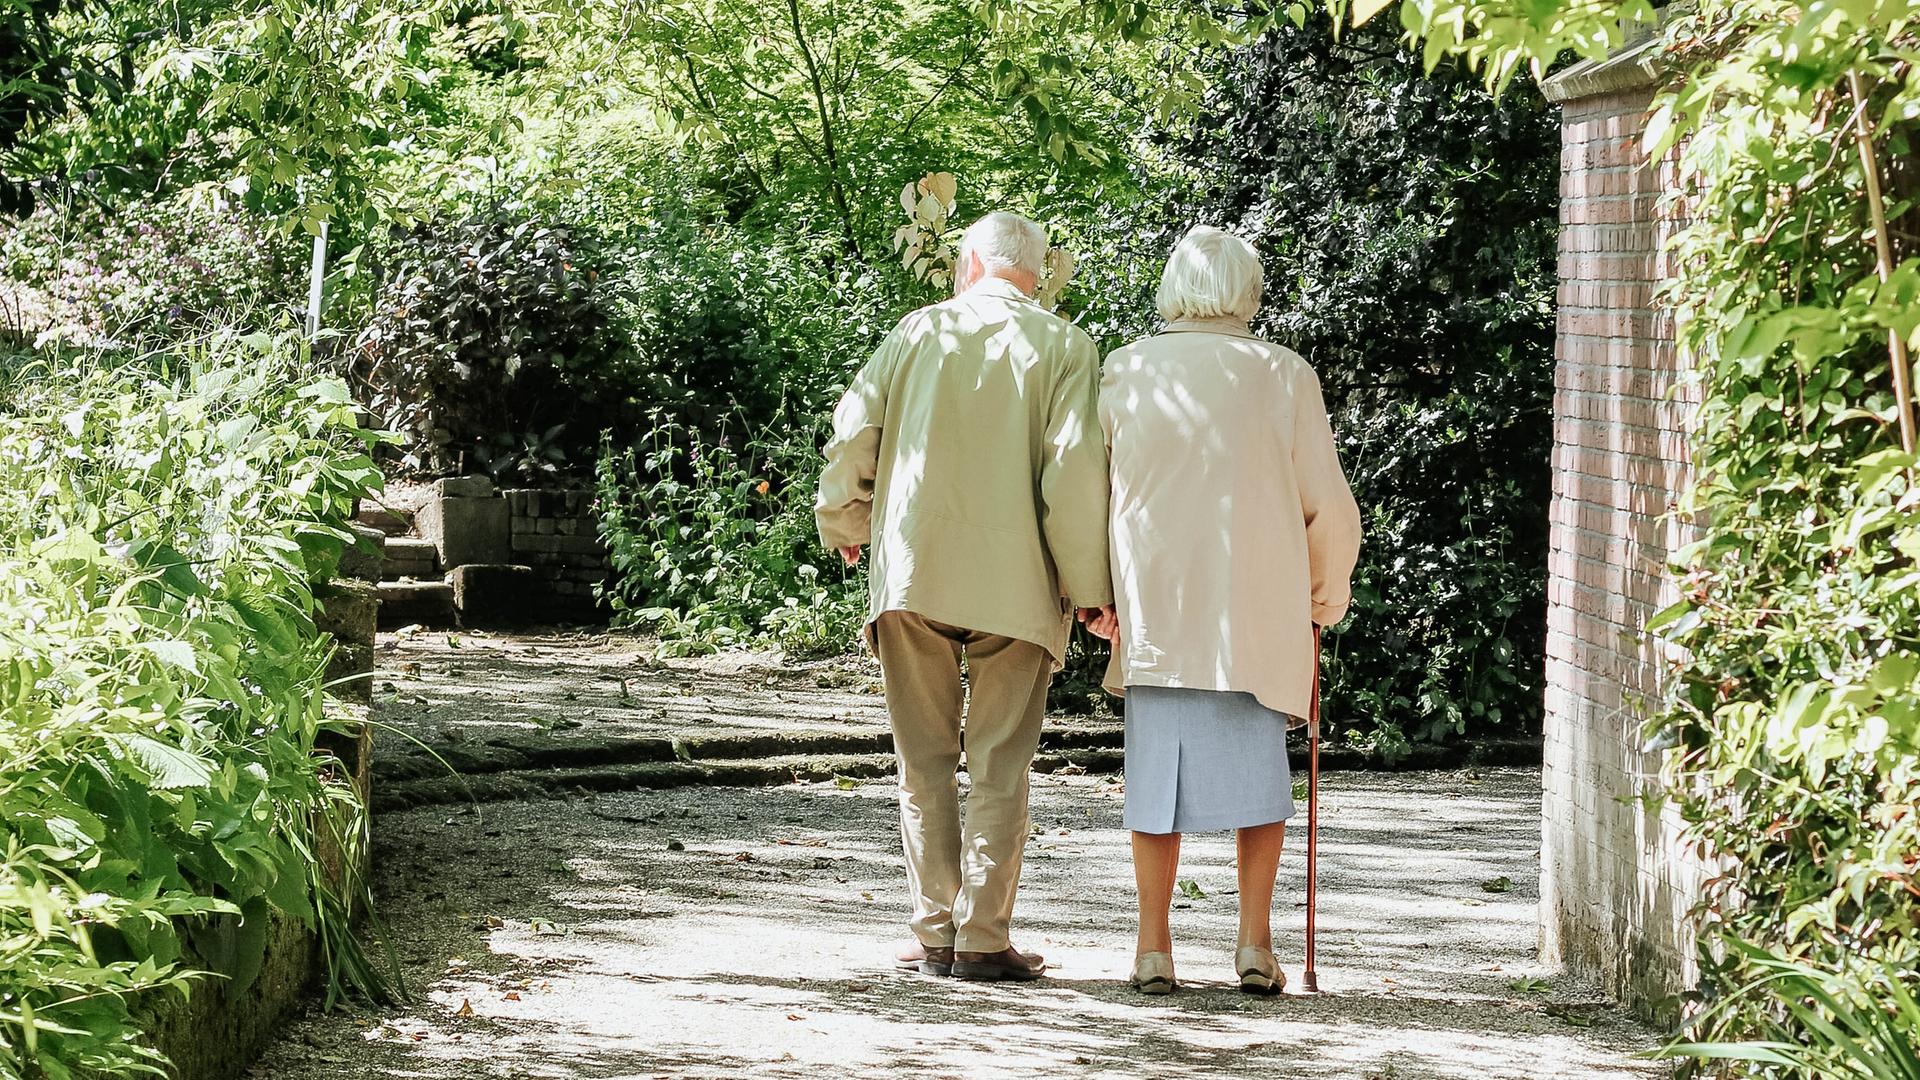 Zwei ältere Personen laufen Hand in Hand über einen Weg, umgeben von Grün.